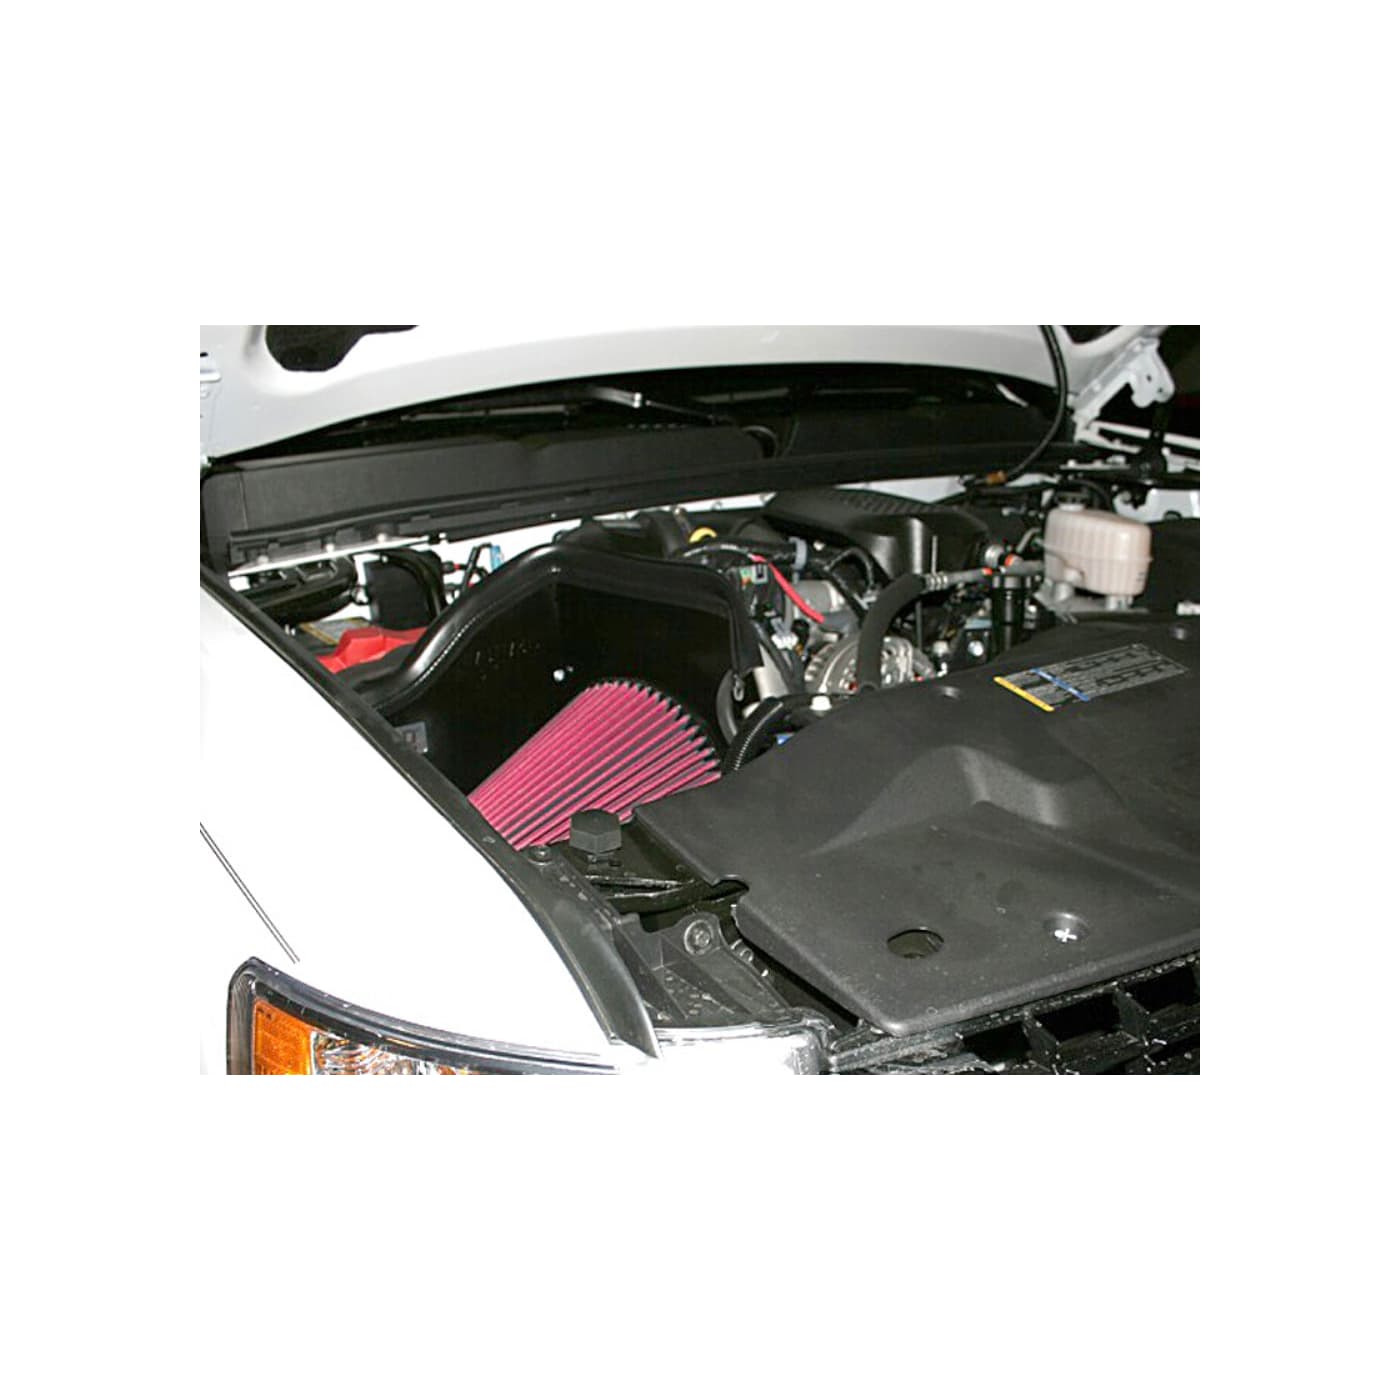 2007-10 GM 2500/3500 HD 6.6L Diesel - AIRAID PERFORMANCE AIR INTAKE SYSTEM